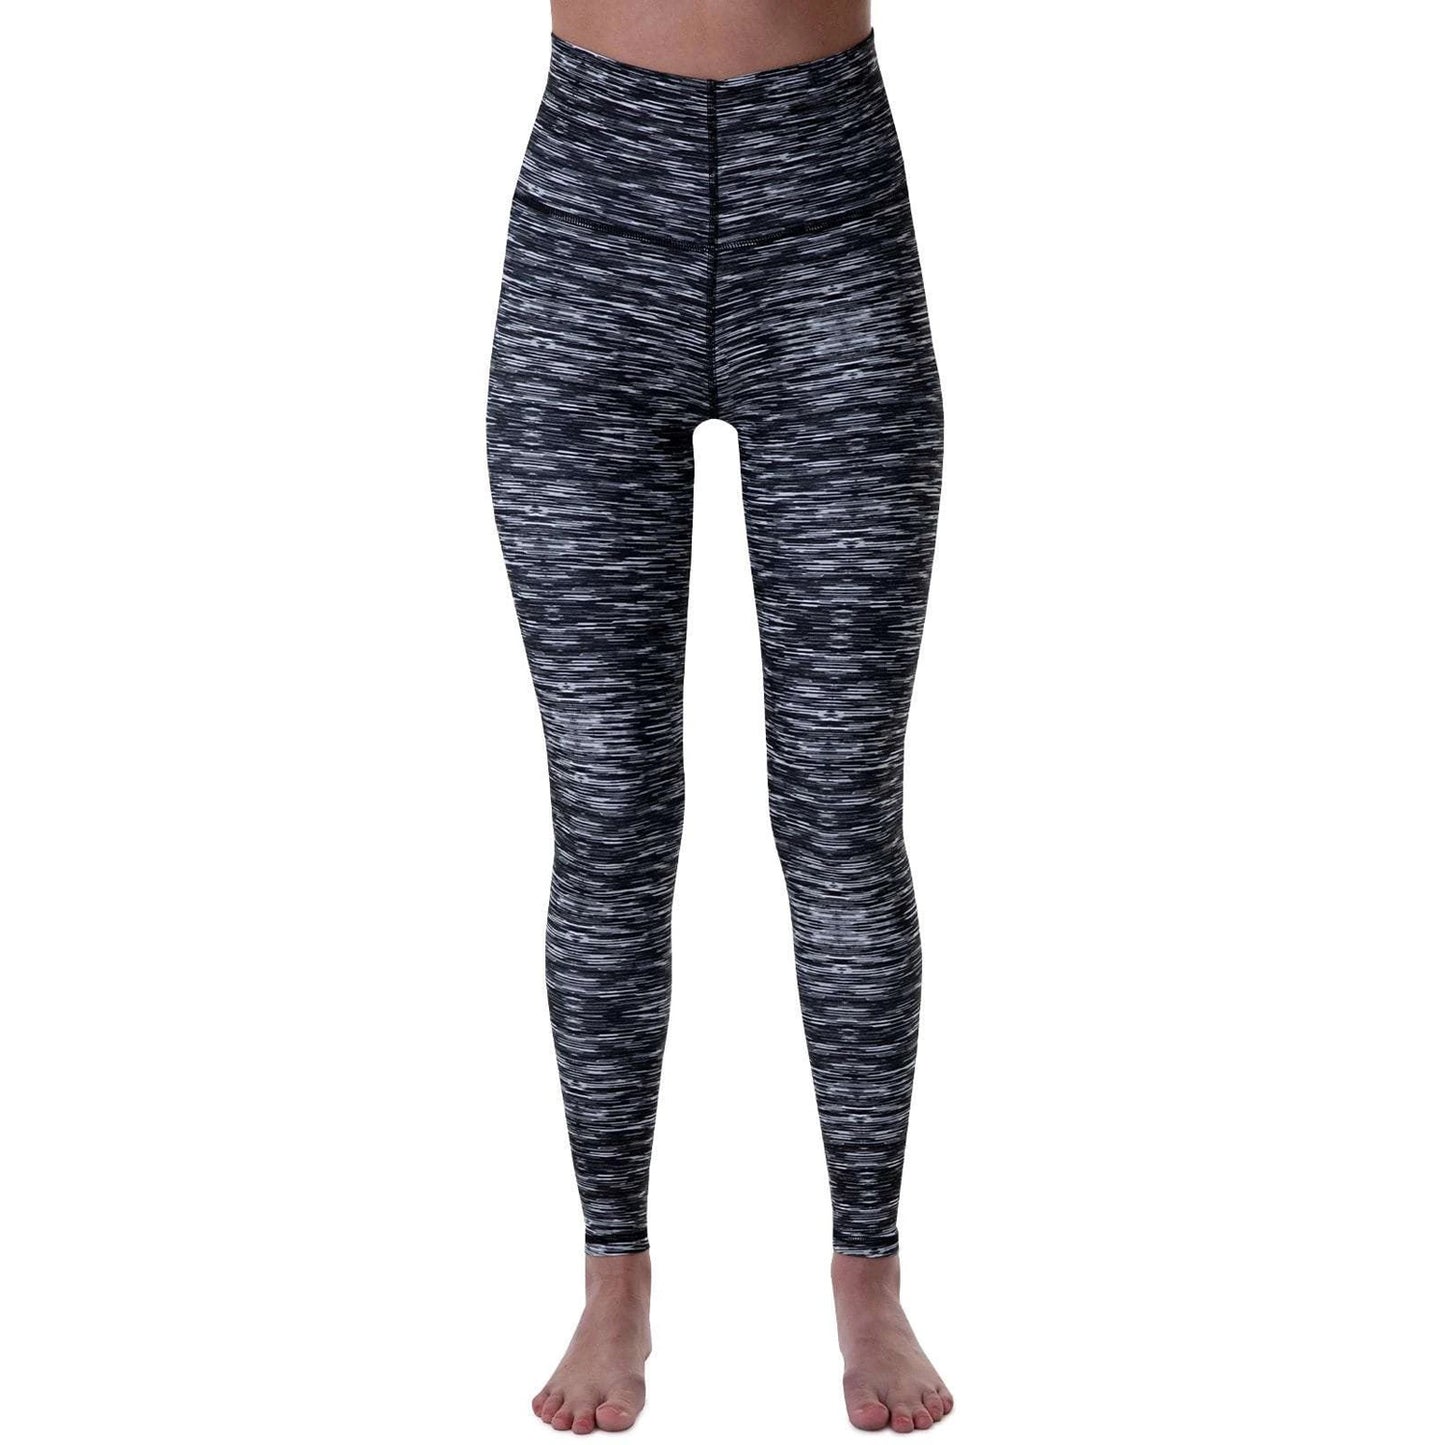 Blackstrap Women's Pinnacle Baselayer Pant Static Base Layer Pants